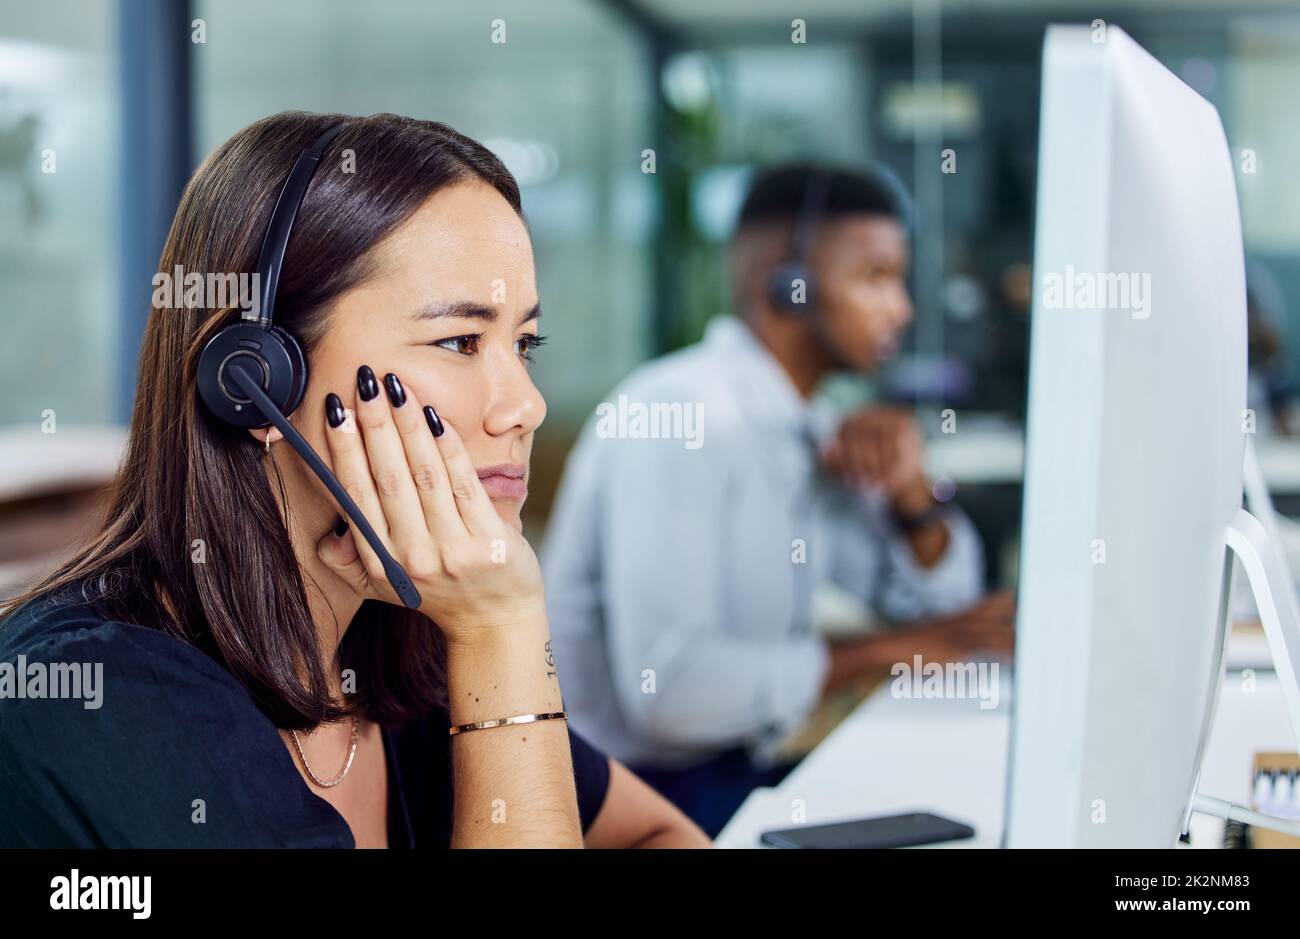 Wann ist dieser Tag zu Ende. Aufnahme eines jungen Callcenter-Agenten, der verwirrt aussieht, während er einen Desktop-pc im Büro verwendet. Stockfoto